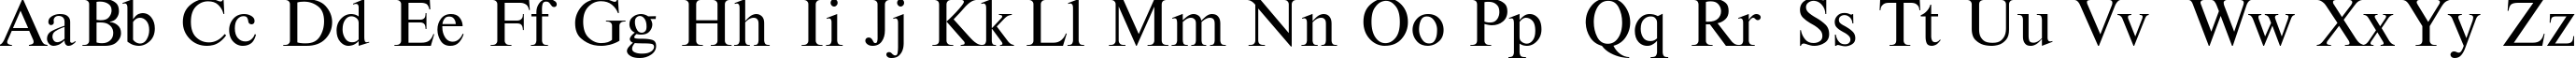 Пример написания английского алфавита шрифтом TimesET